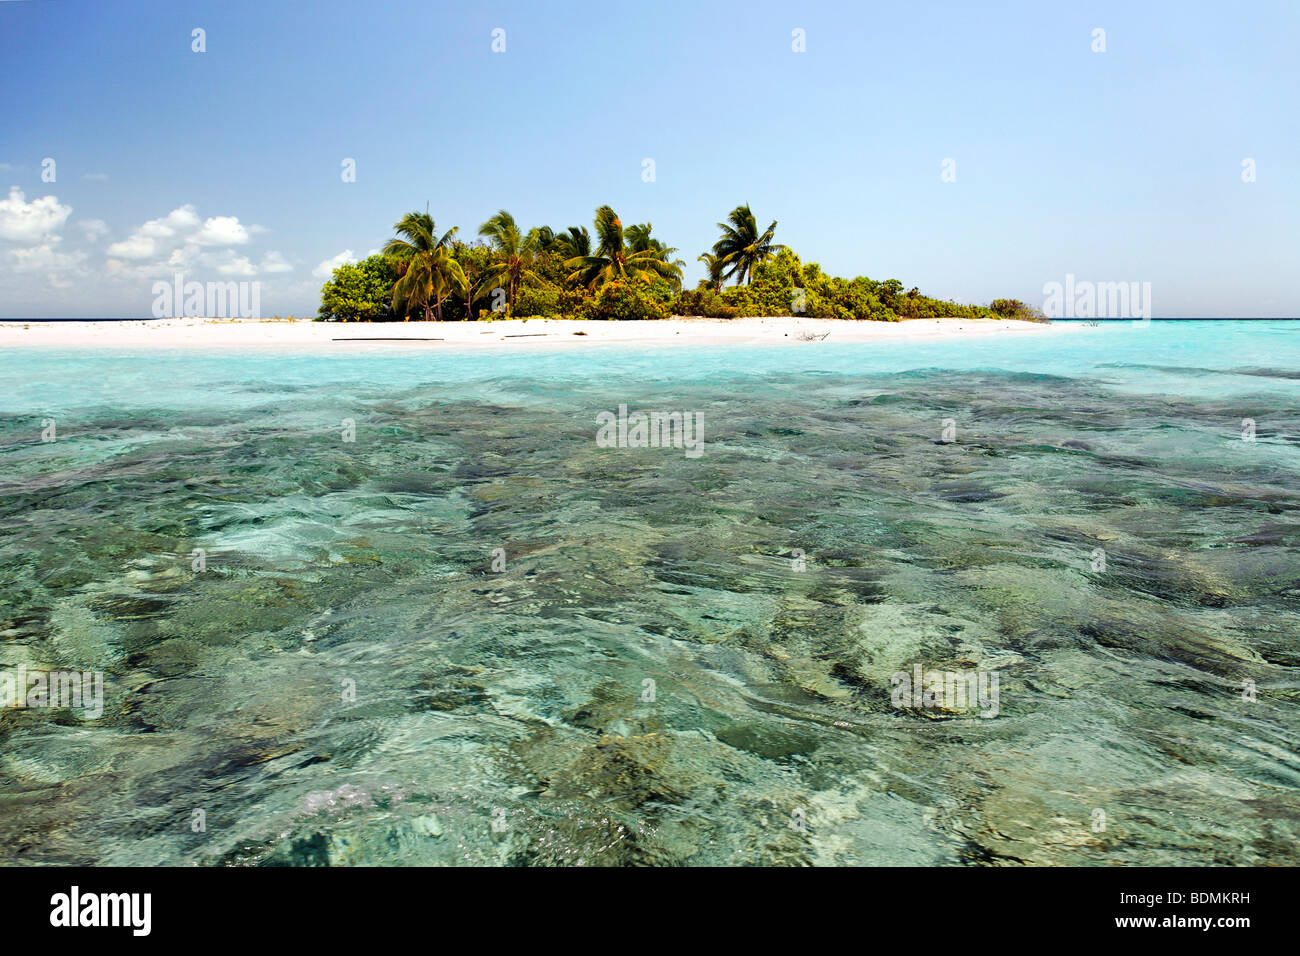 Menschenleeren Insel, Malediven Insel, Lagune, Korallen, Palmen, Strand, türkisfarbenes Wasser, Süd Male Atoll, Malediven, Schären, Stockfoto